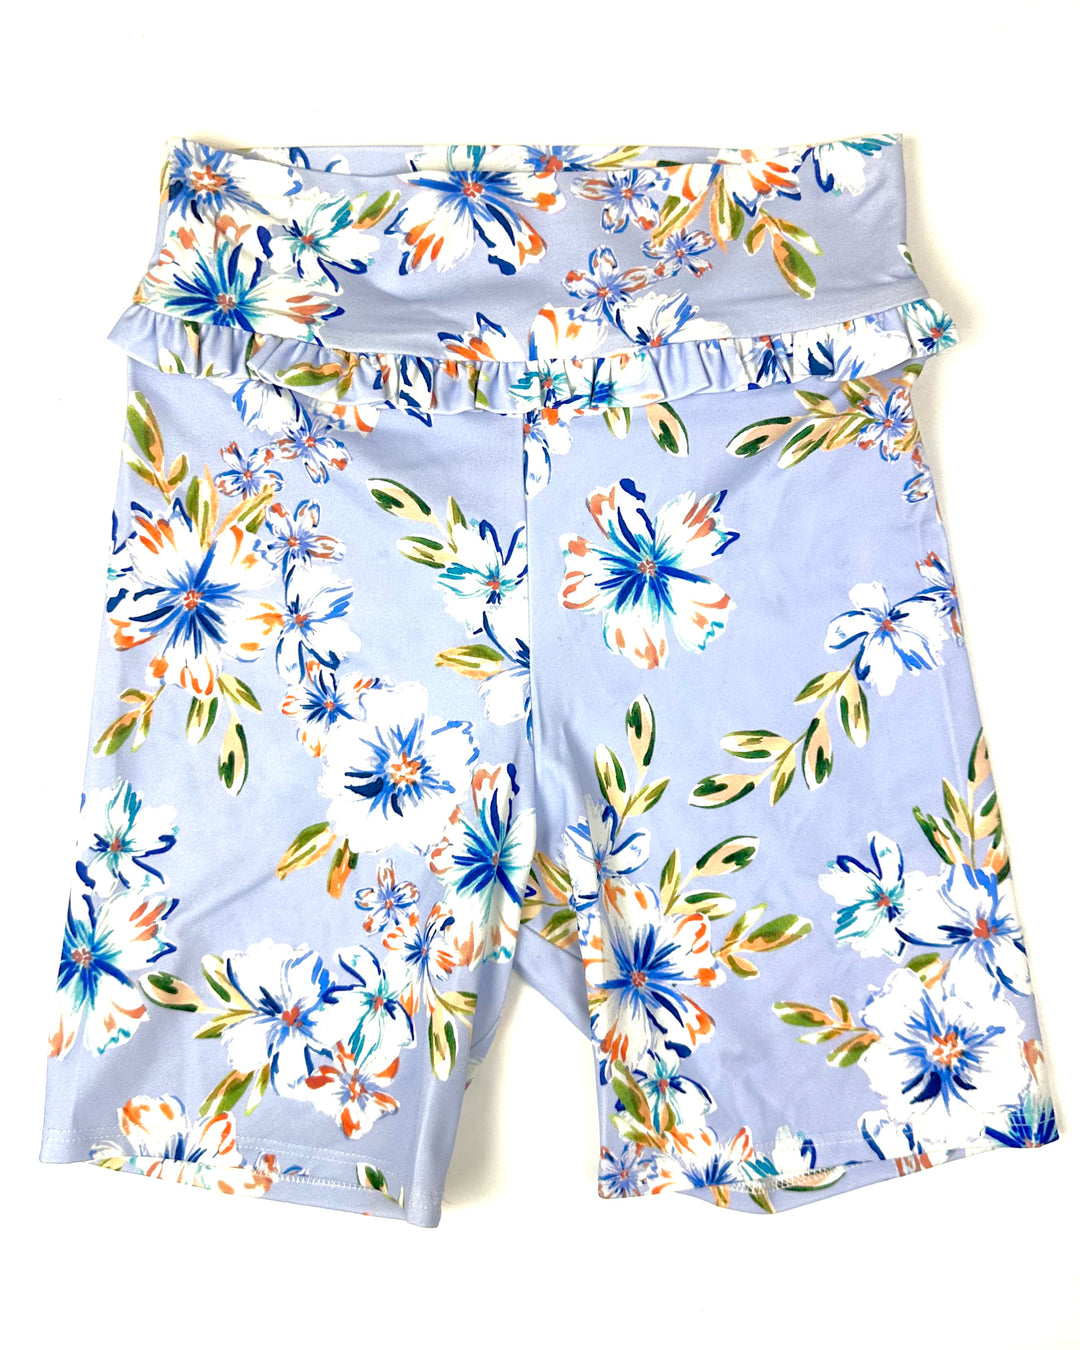 Lavender Floral Swim Shorts - Size 2-4